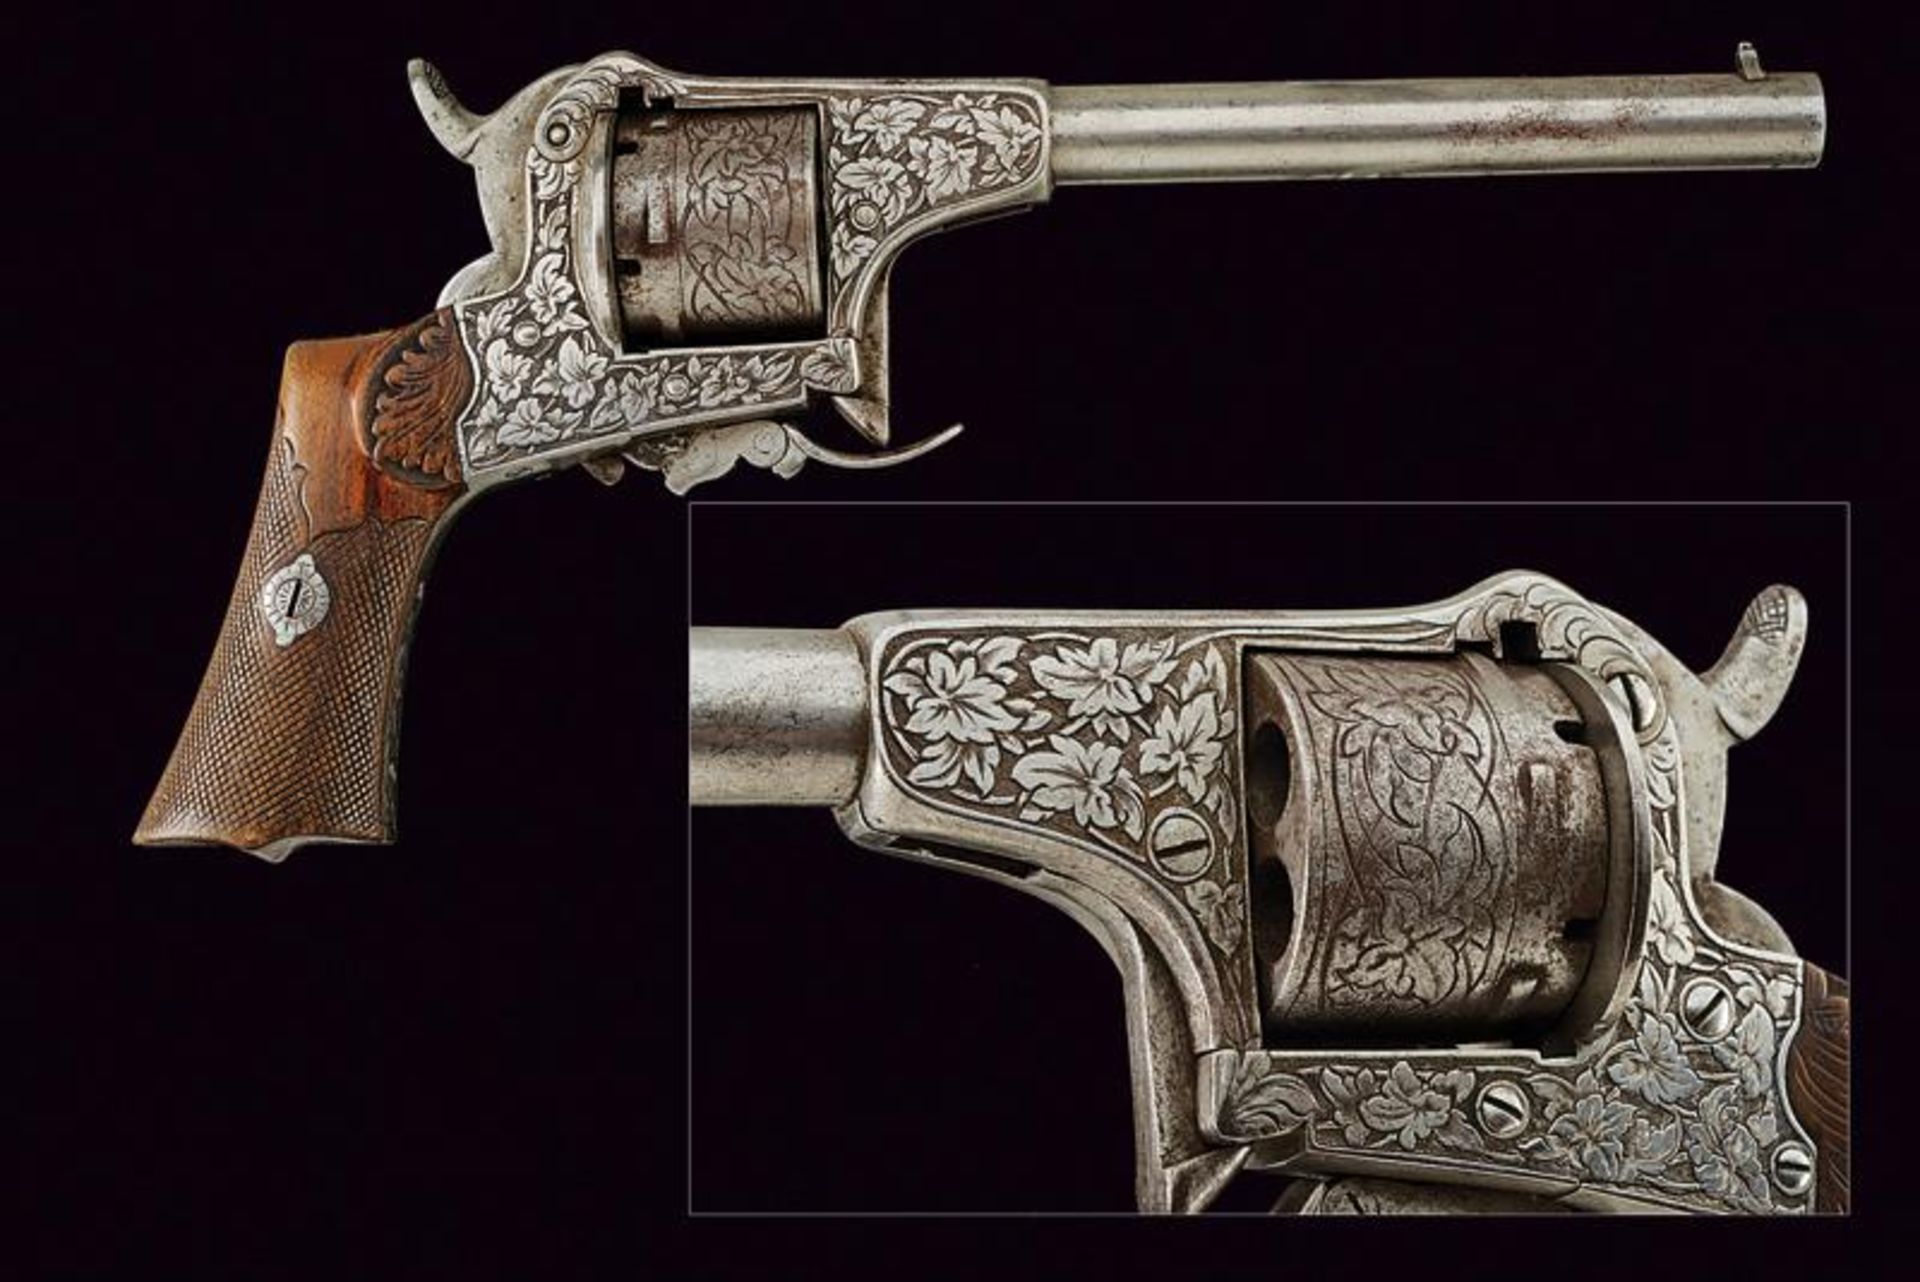 An interesting pinfire revolver